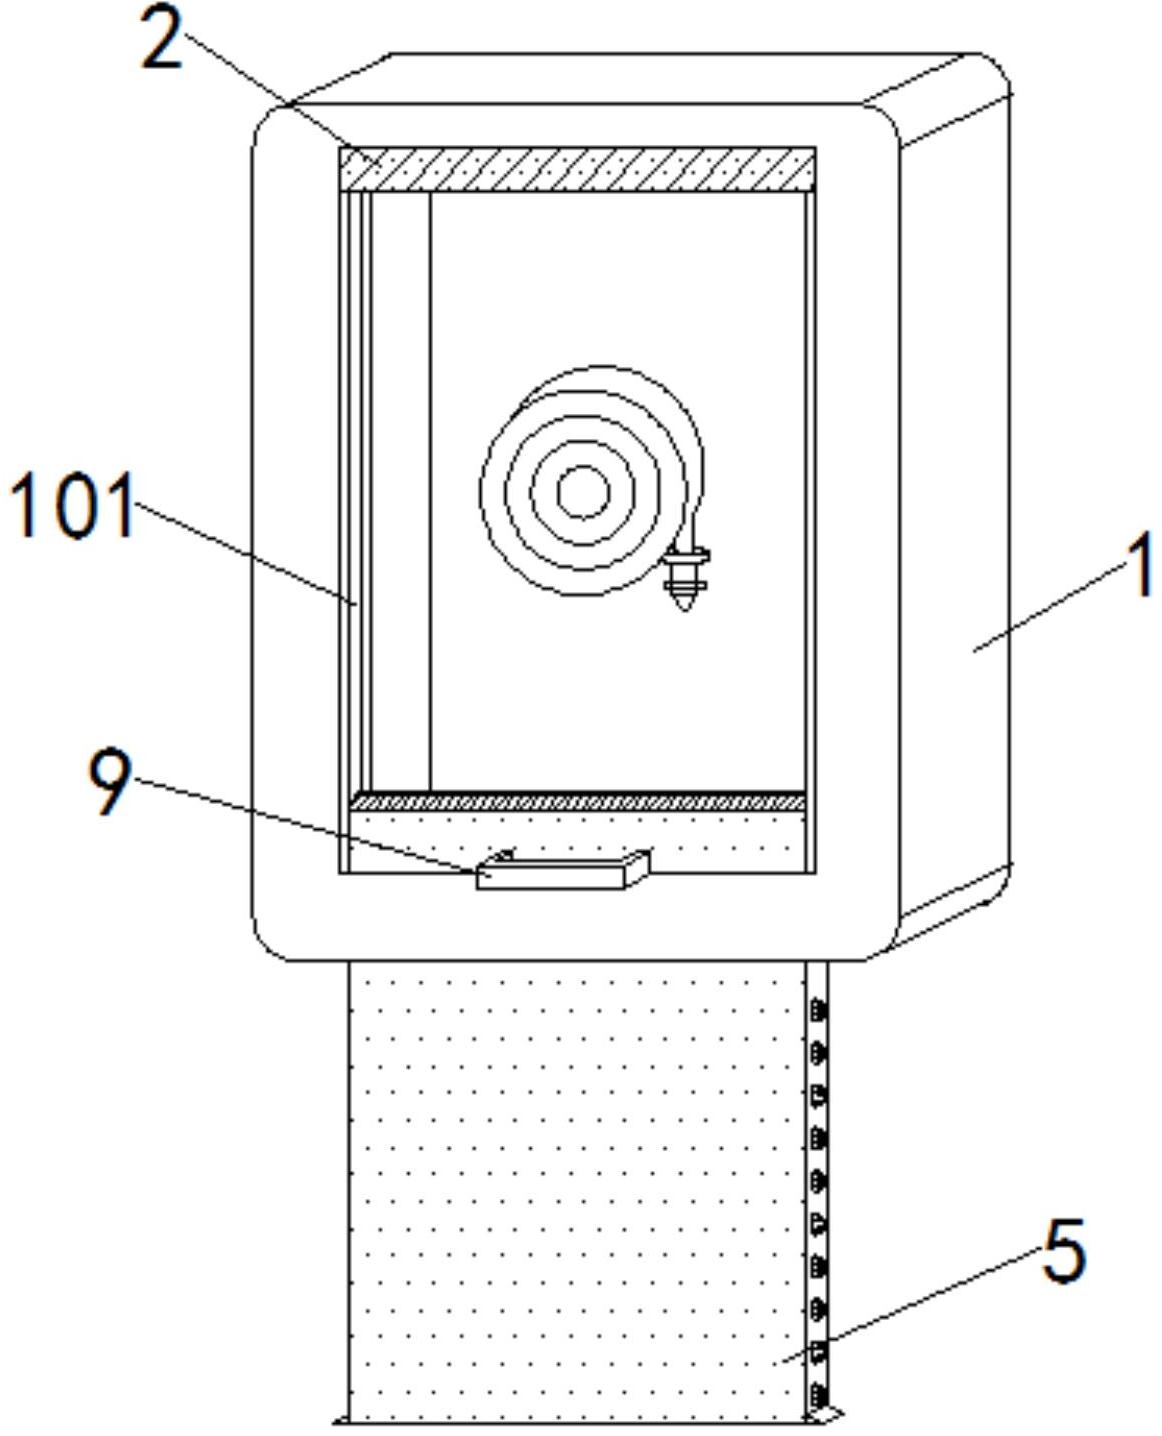 一种防止生锈卡顿的消防箱专利图